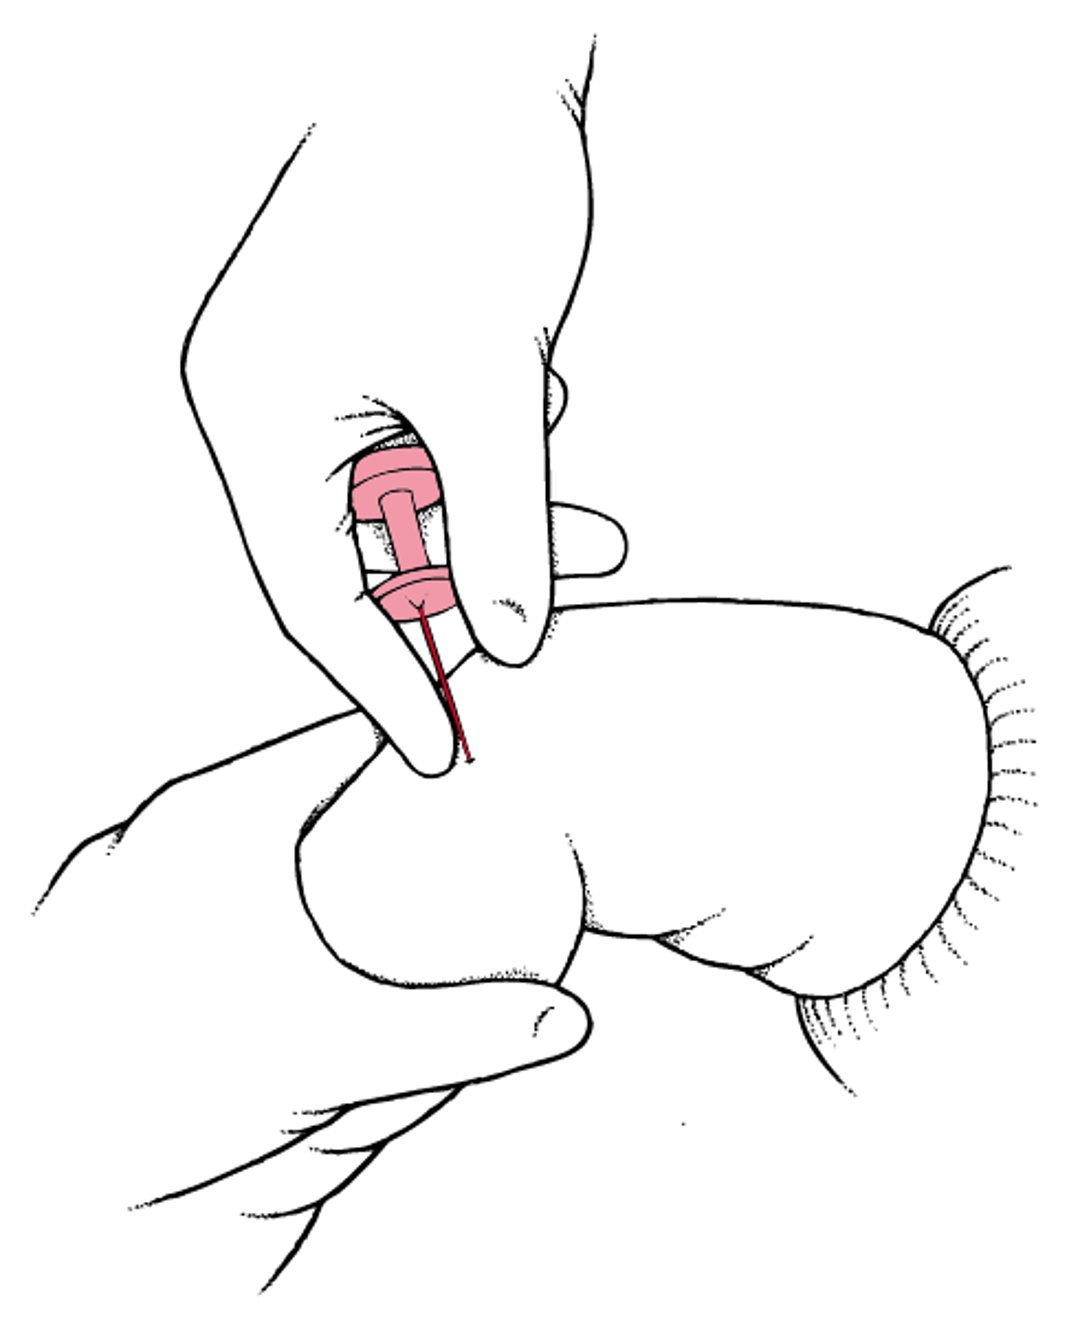 Inserção intraóssea (IO) de agulha